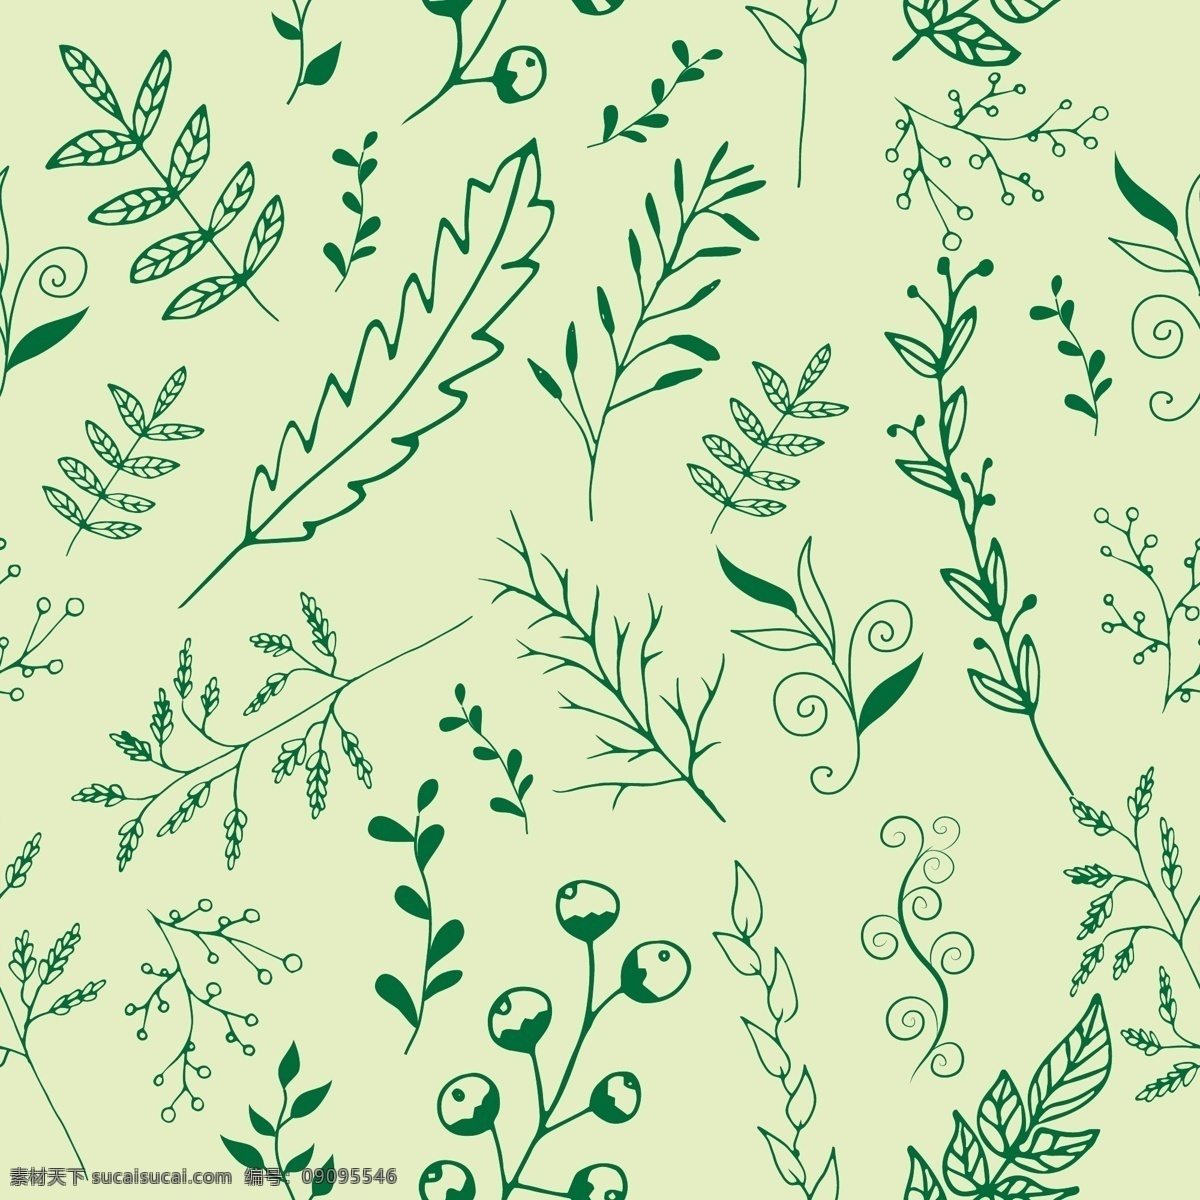 绿色 手绘 植物 叶子 矢量图 广告背景 广告 背景 背景素材 底纹背景 创意 简约 绿色背景 底纹